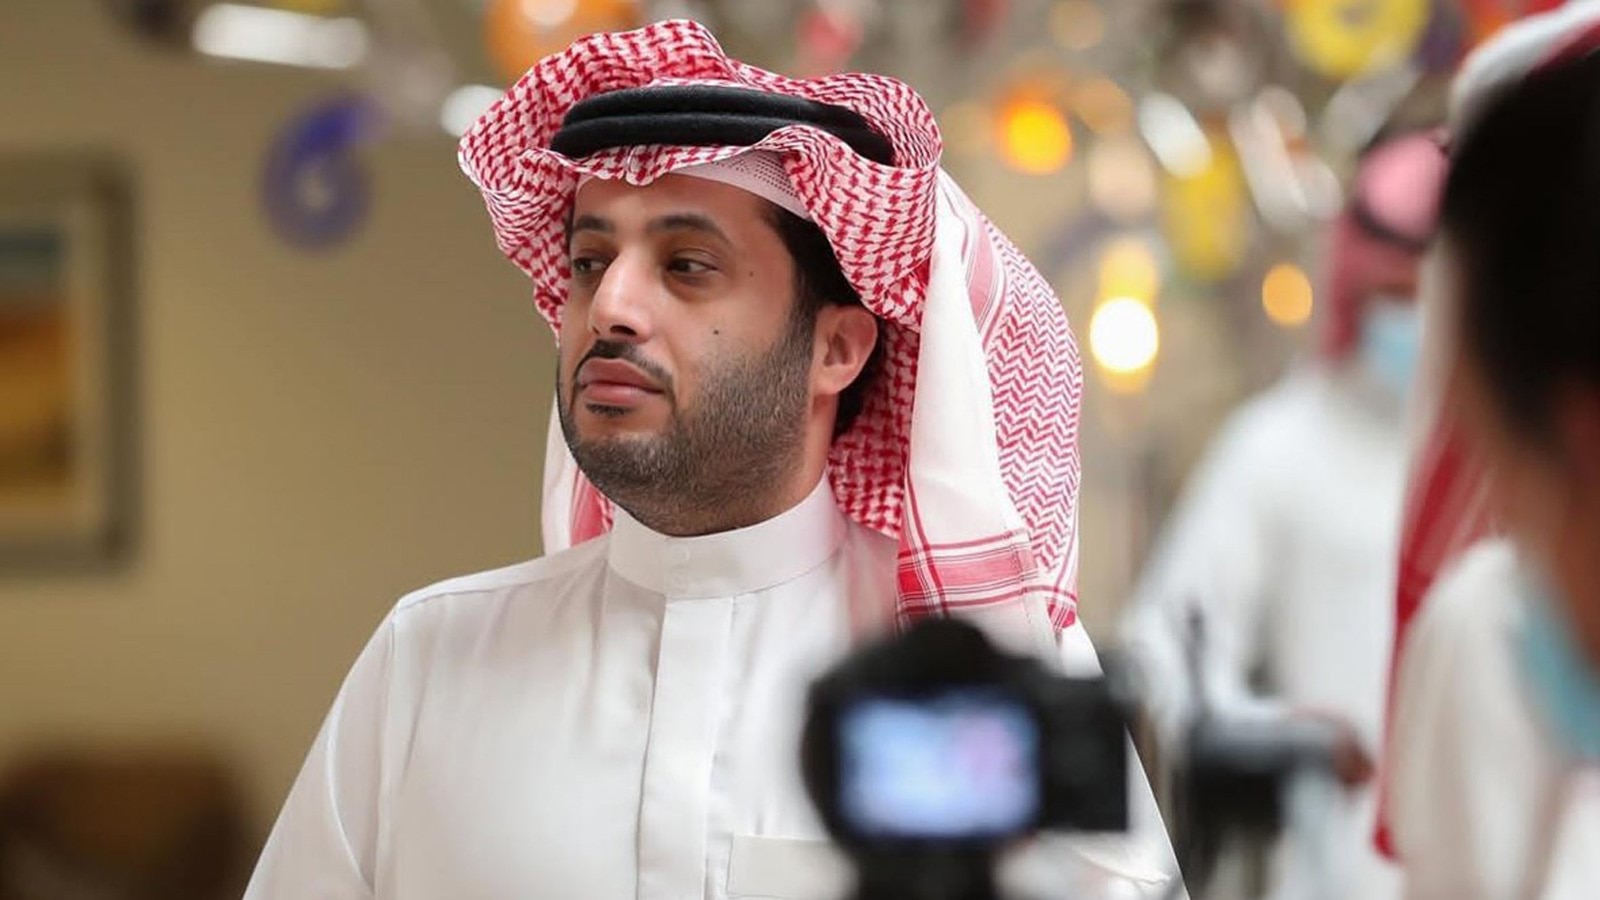 تركي آل شيخ رئيس مجلس إدارة الهيئة العامة للترفيه بالمملكة العربية السعودية